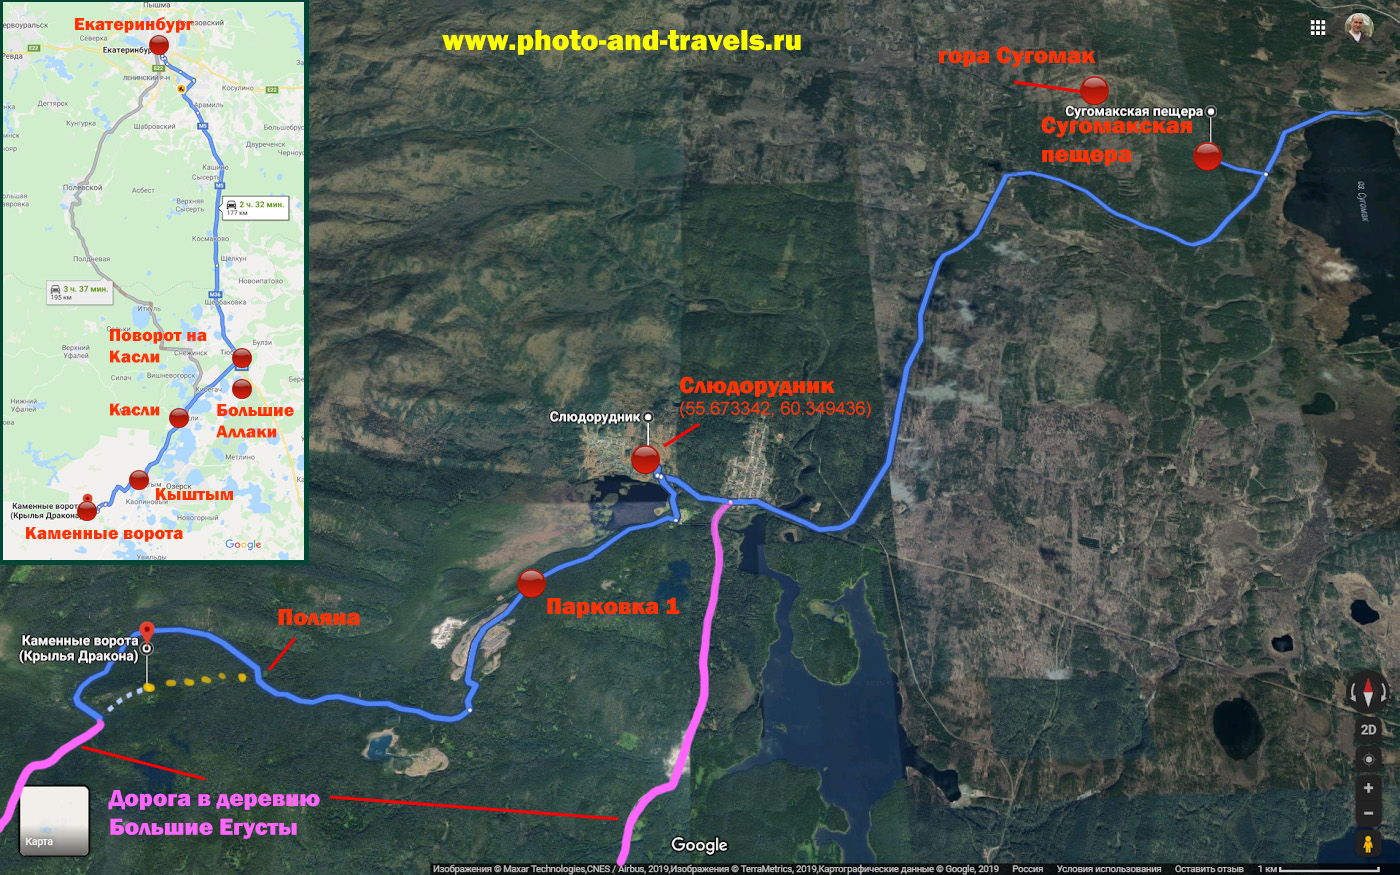 2. Карта, поясняющая, как доехать до горы со скалой Крылья дракона (Каменные ворота) из Челябинска или из Екатеринбурга.